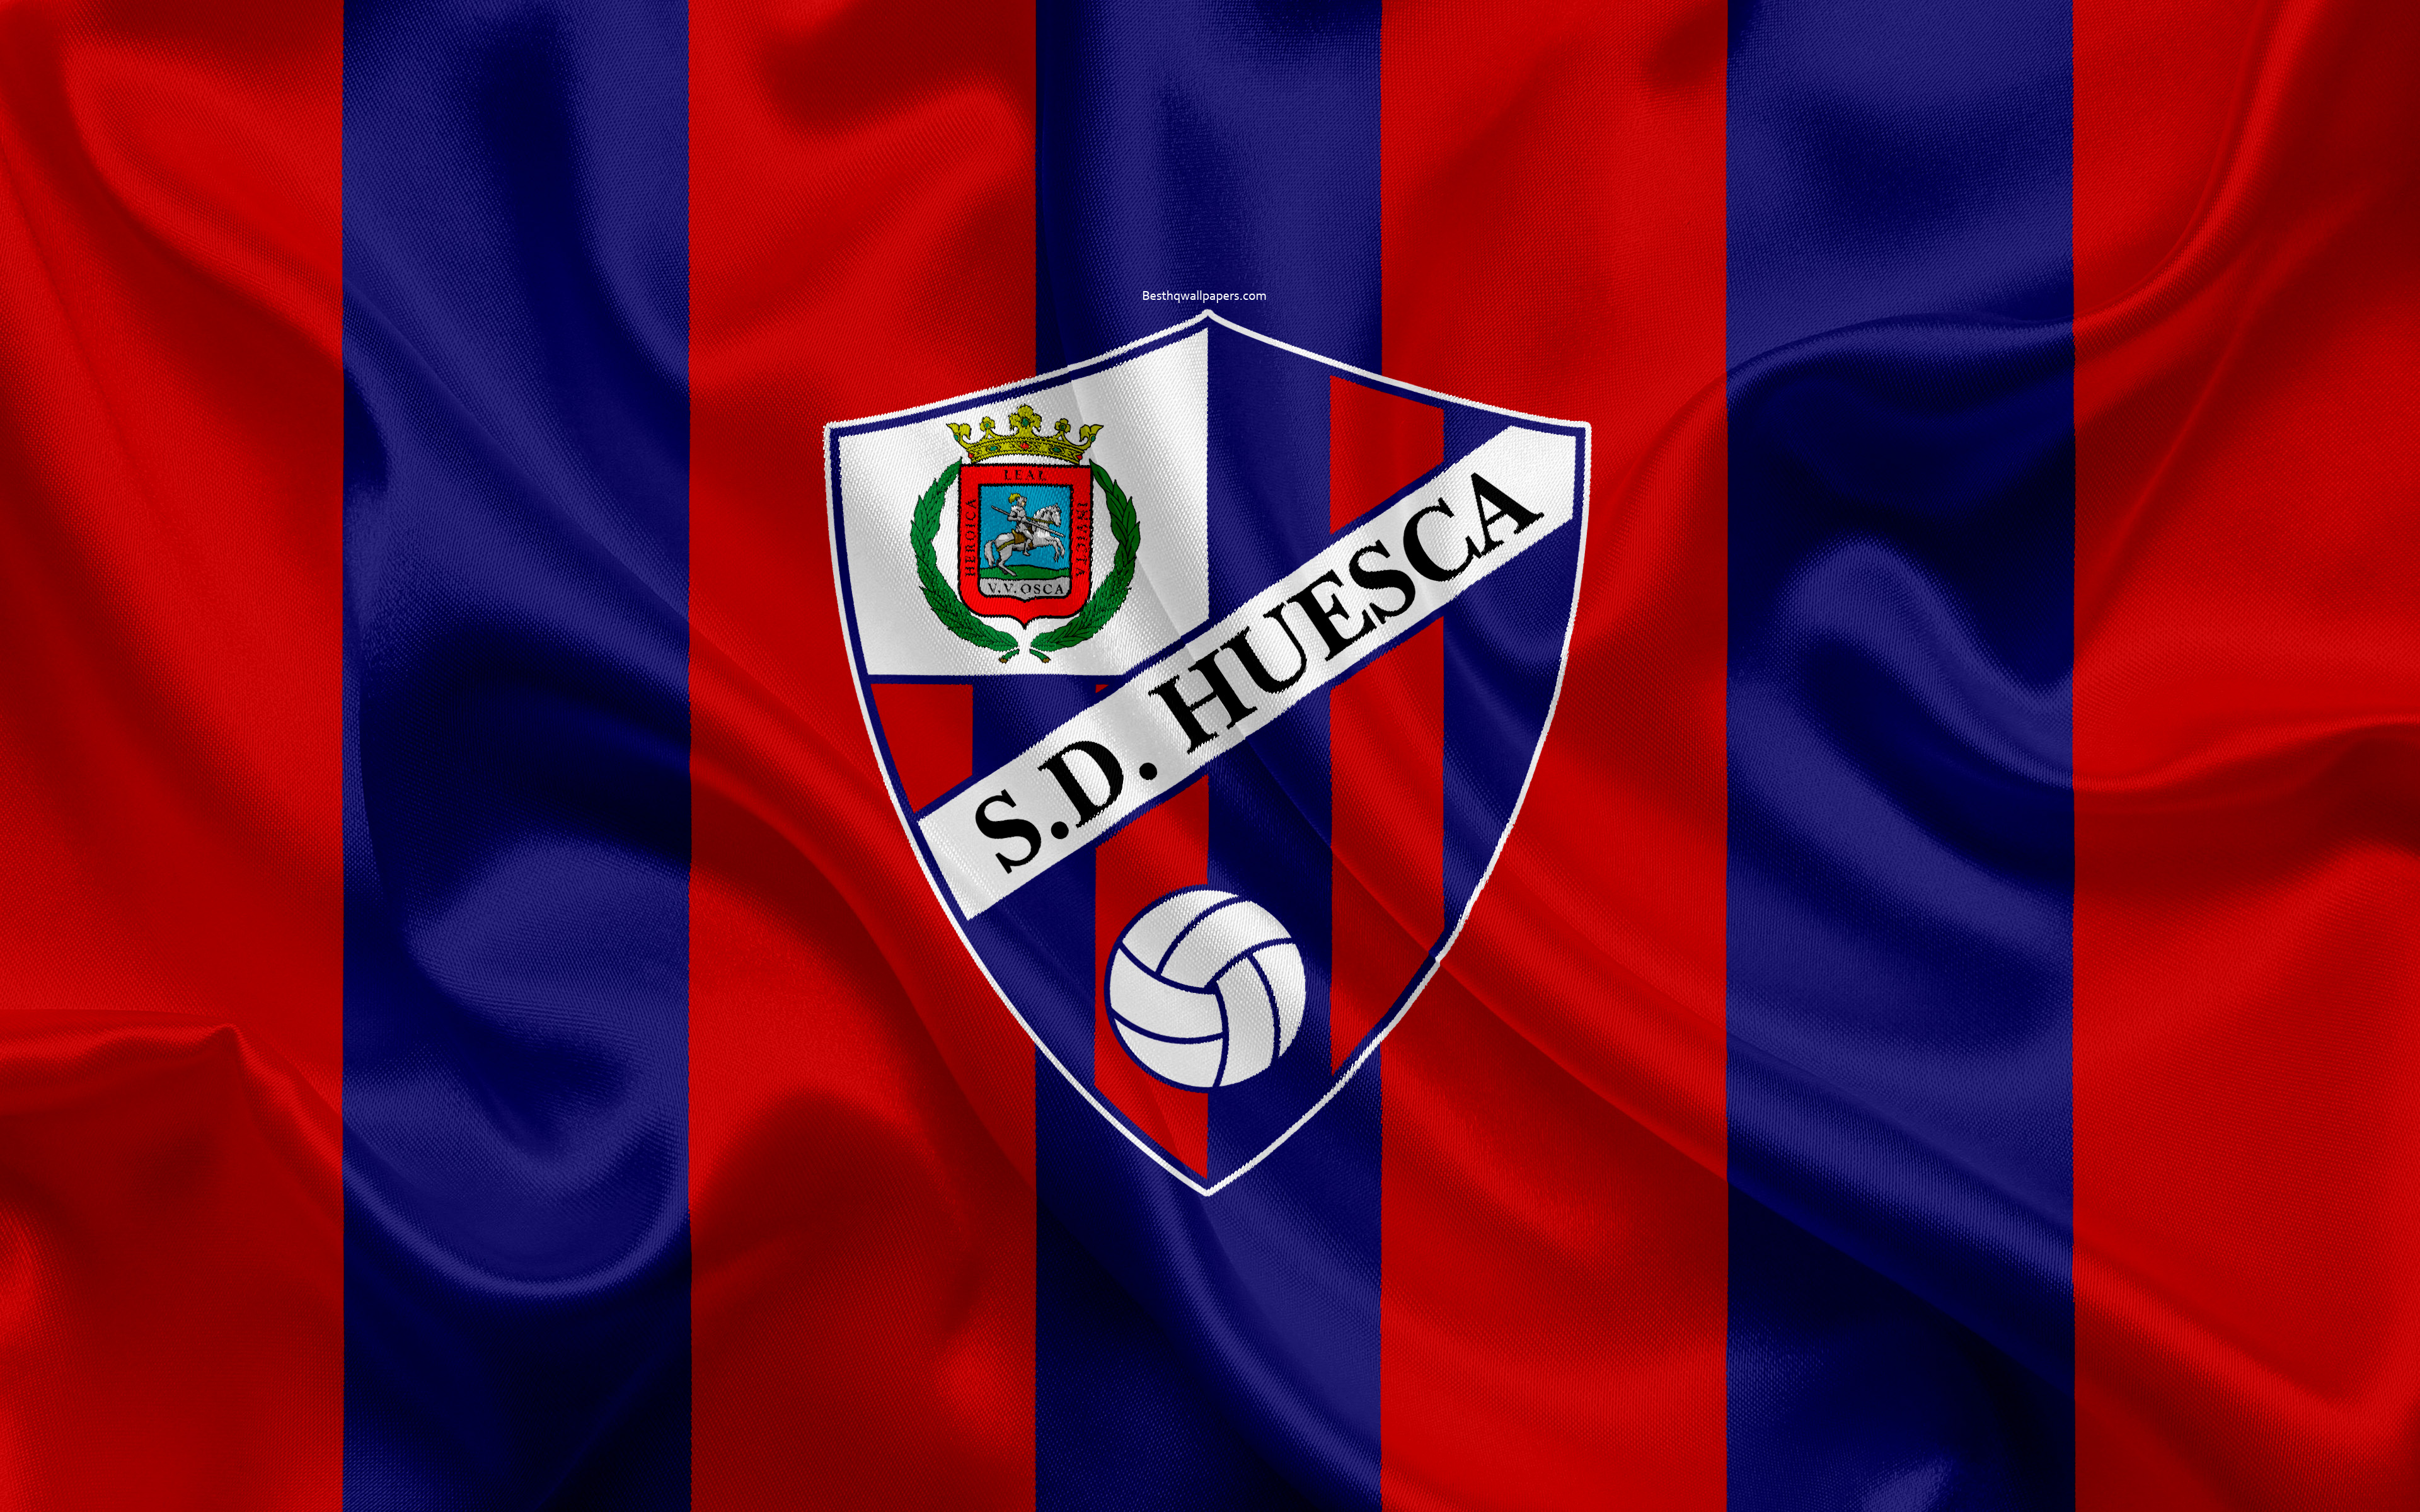 Laden Sie Sd Huesca HD-Desktop-Hintergründe herunter